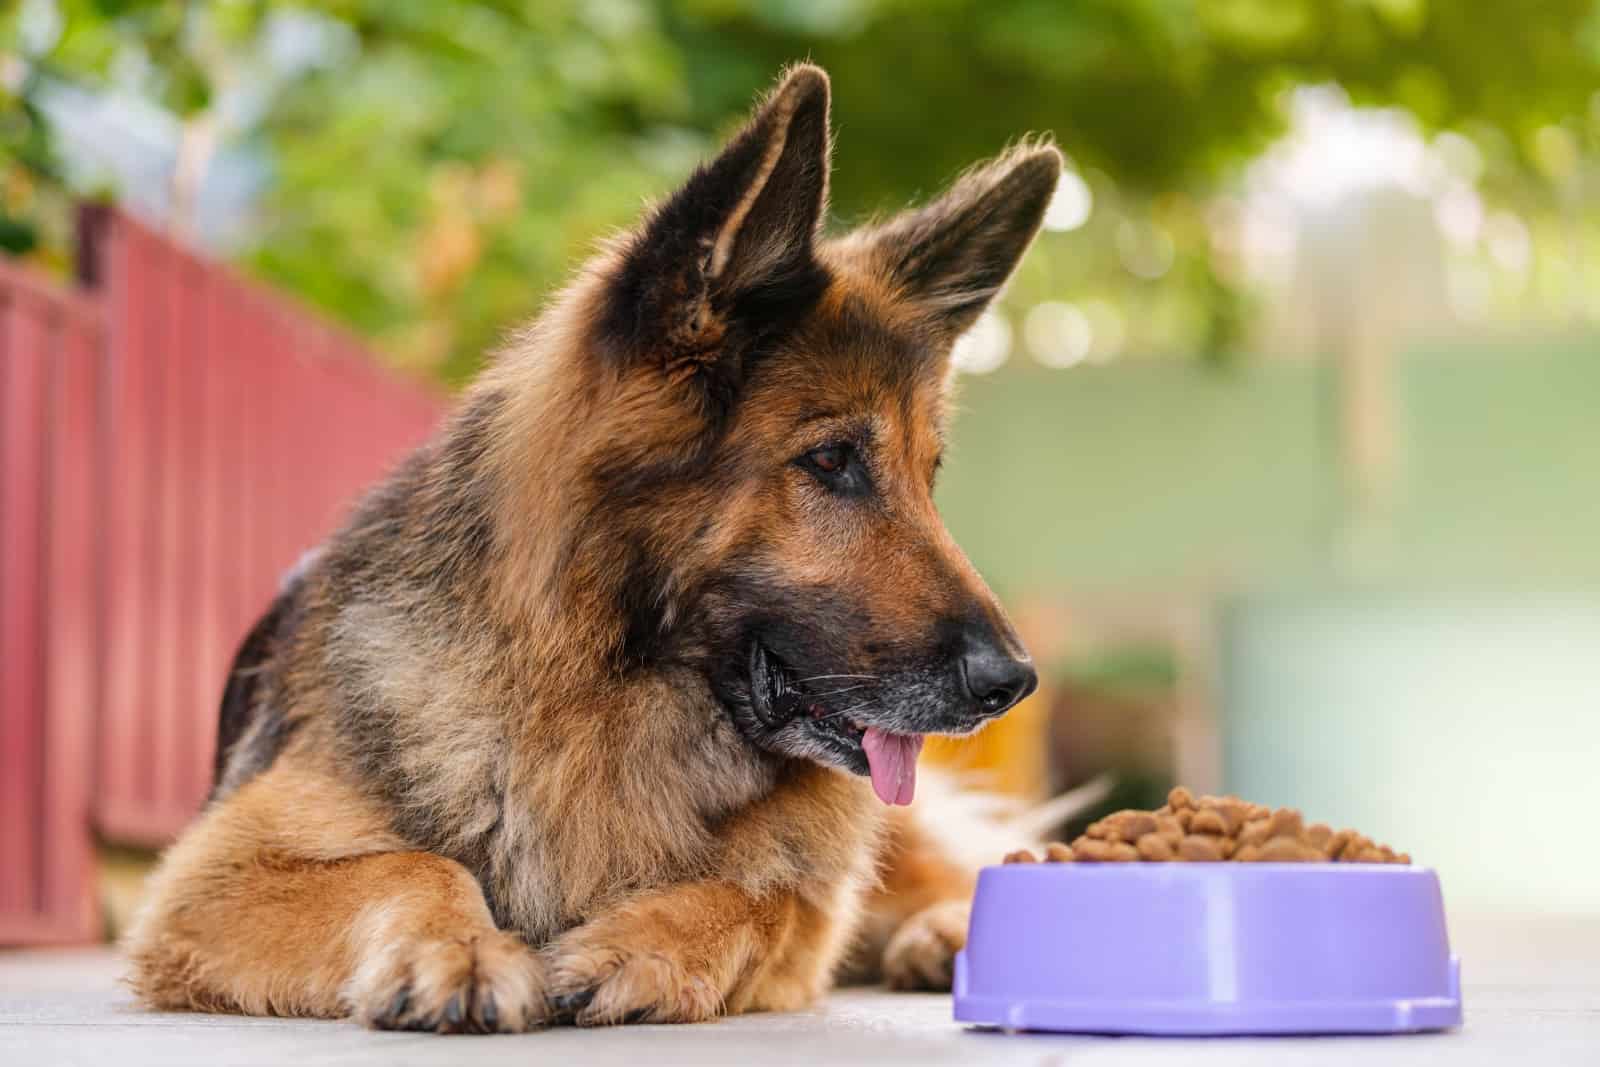 german shepherd looks at kibble dog food